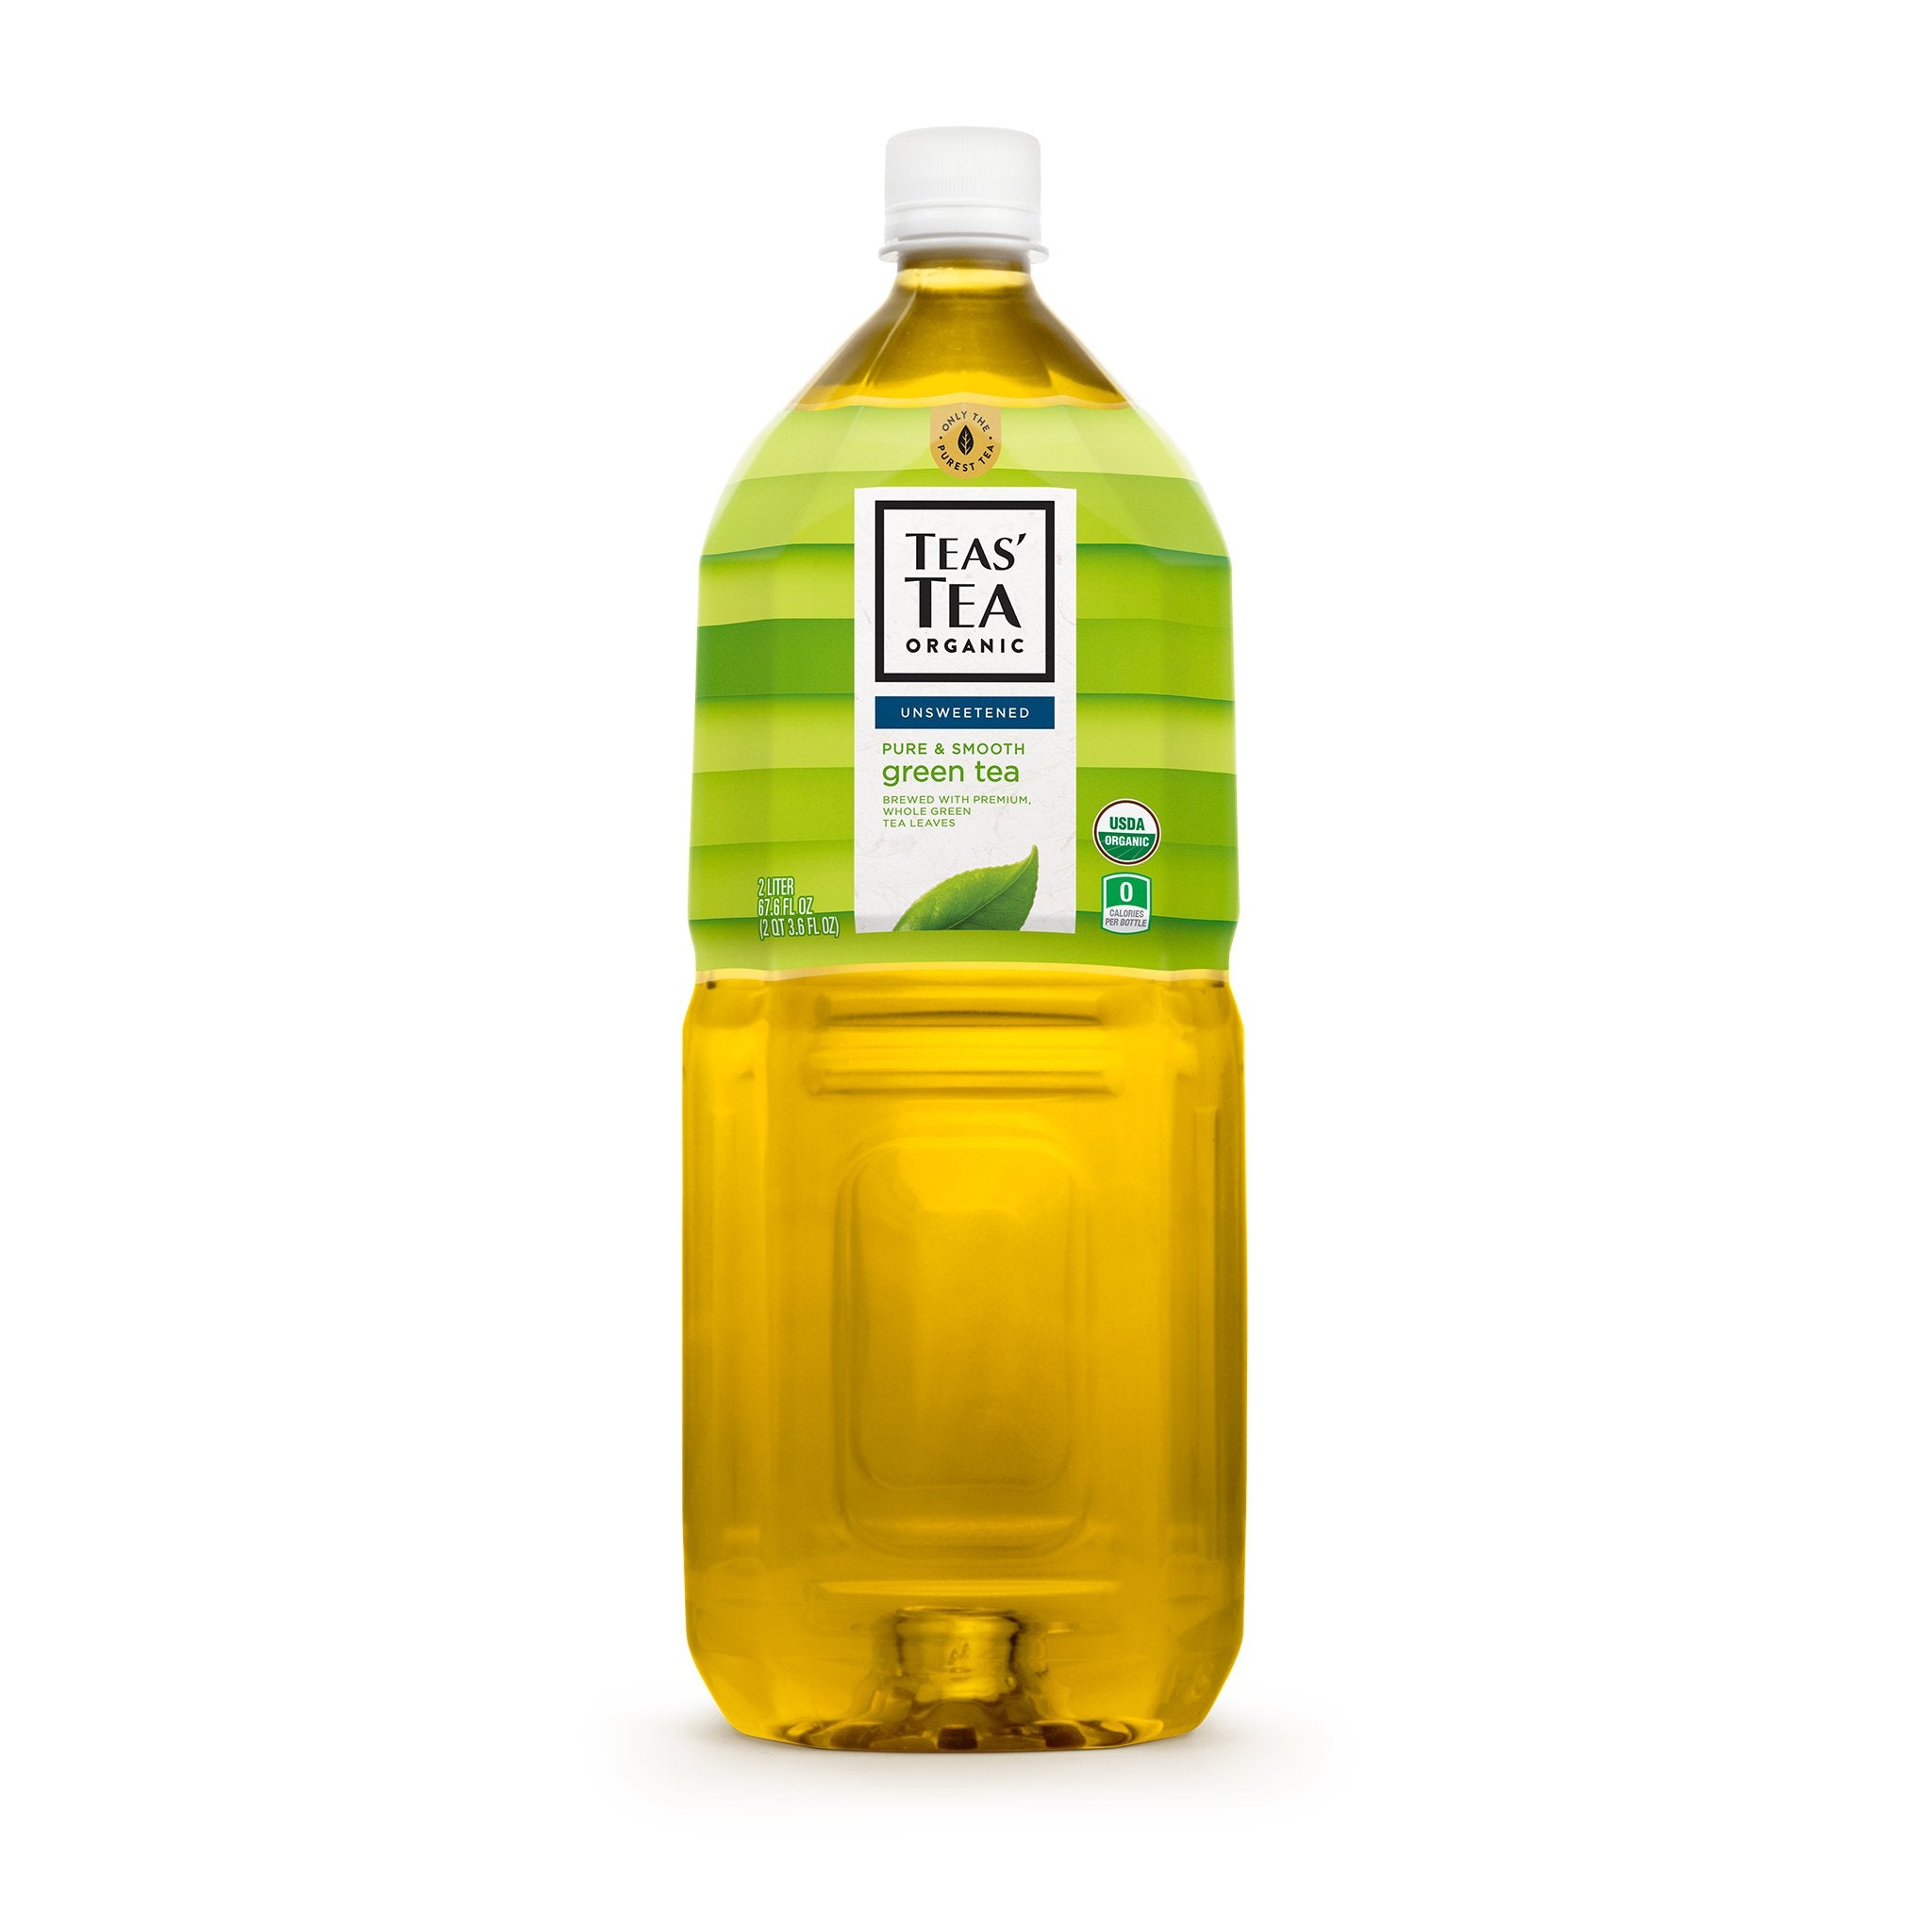 Teas' Tea Unsweetened Green Tea - 67.6 fl oz bottle